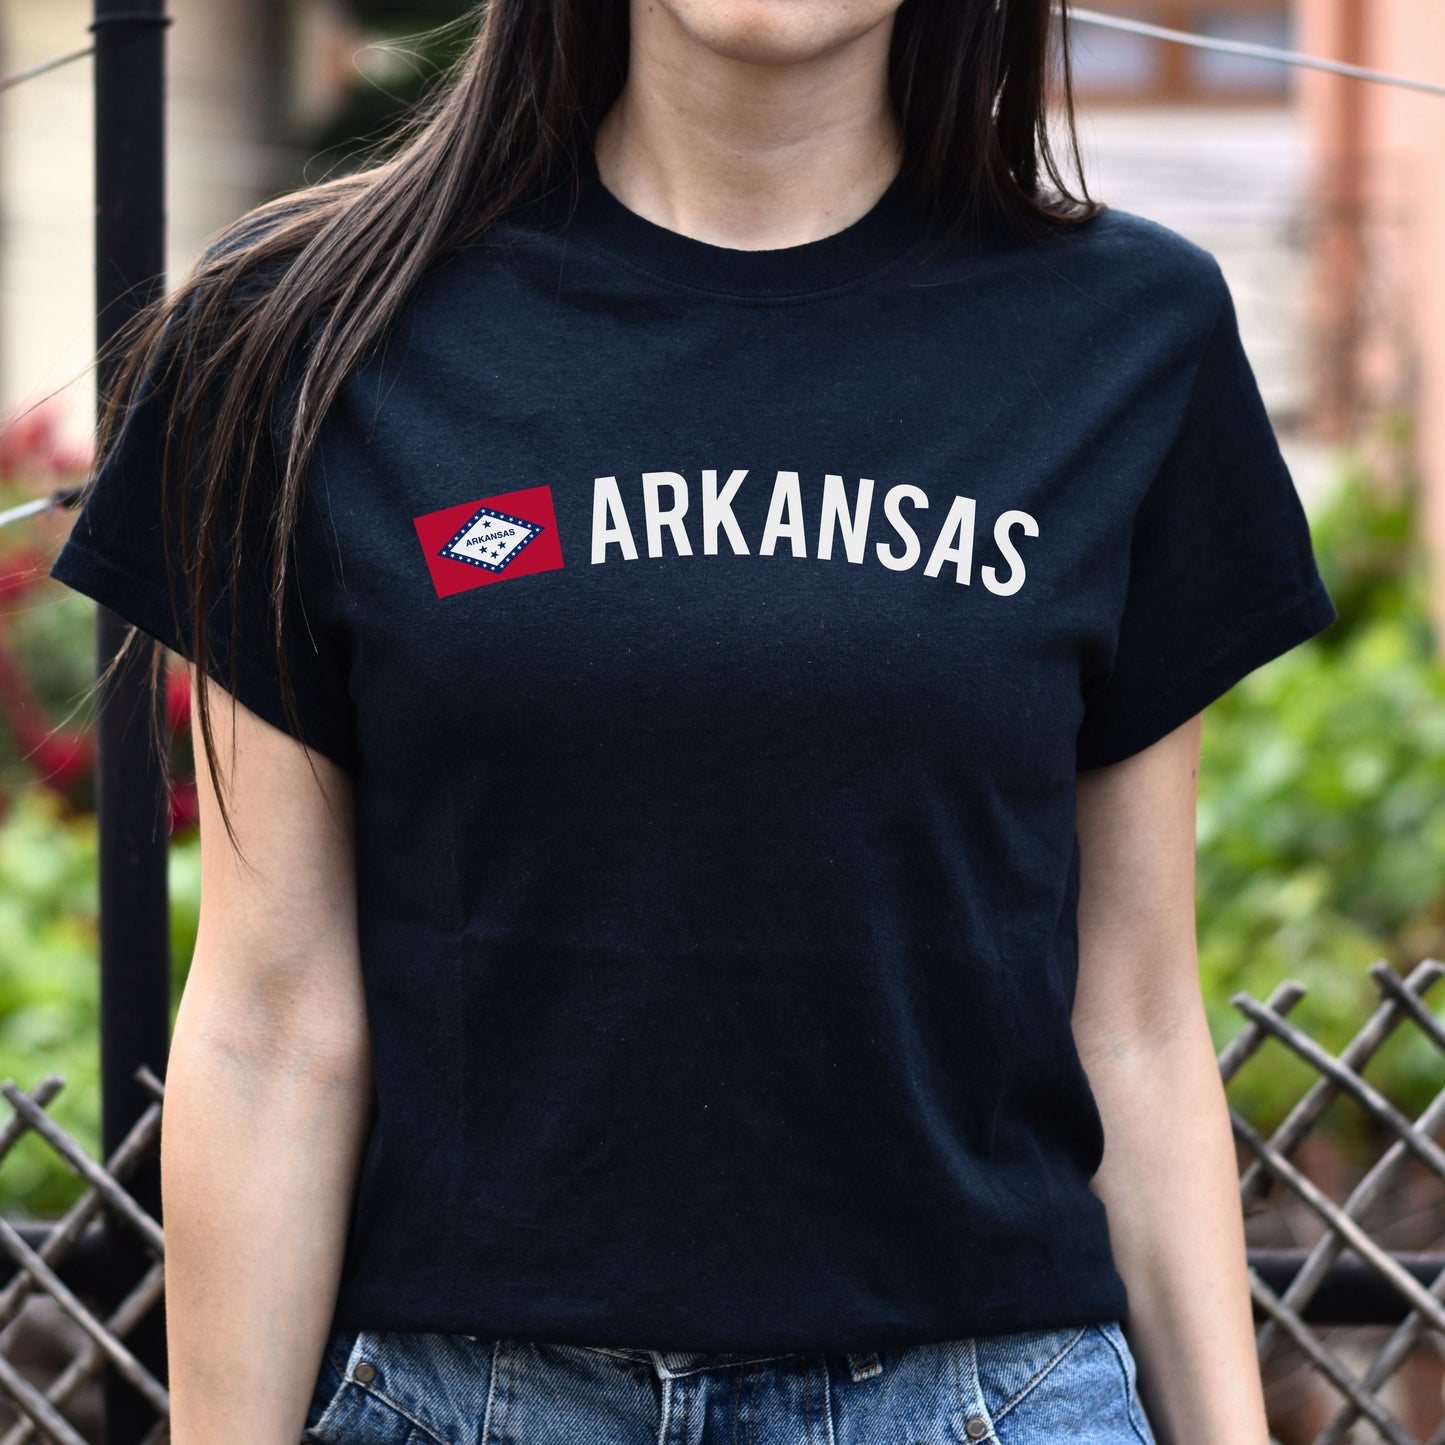 Arkansas Unisex T-shirt gift Arkansas flag tee Nashville Haskell Austin White Black-Black-Family-Gift-Planet